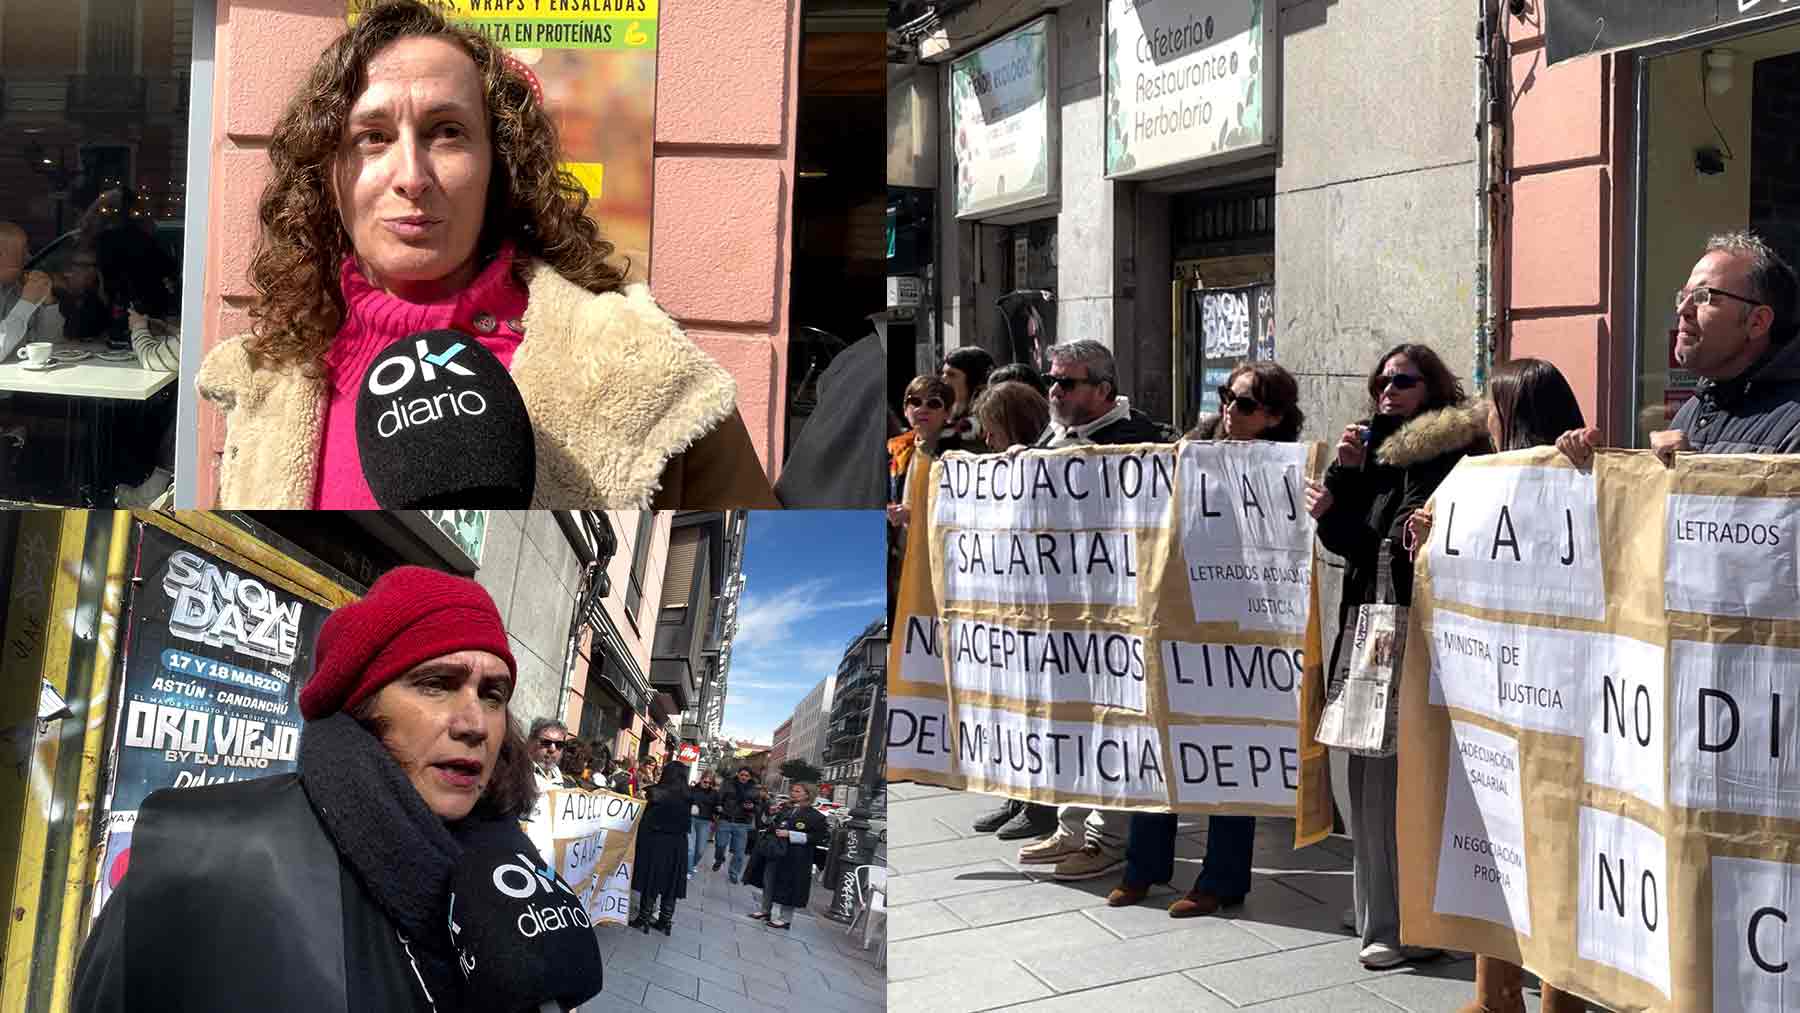 Letrados de la Administración de Justicia manifestándose en Madrid.